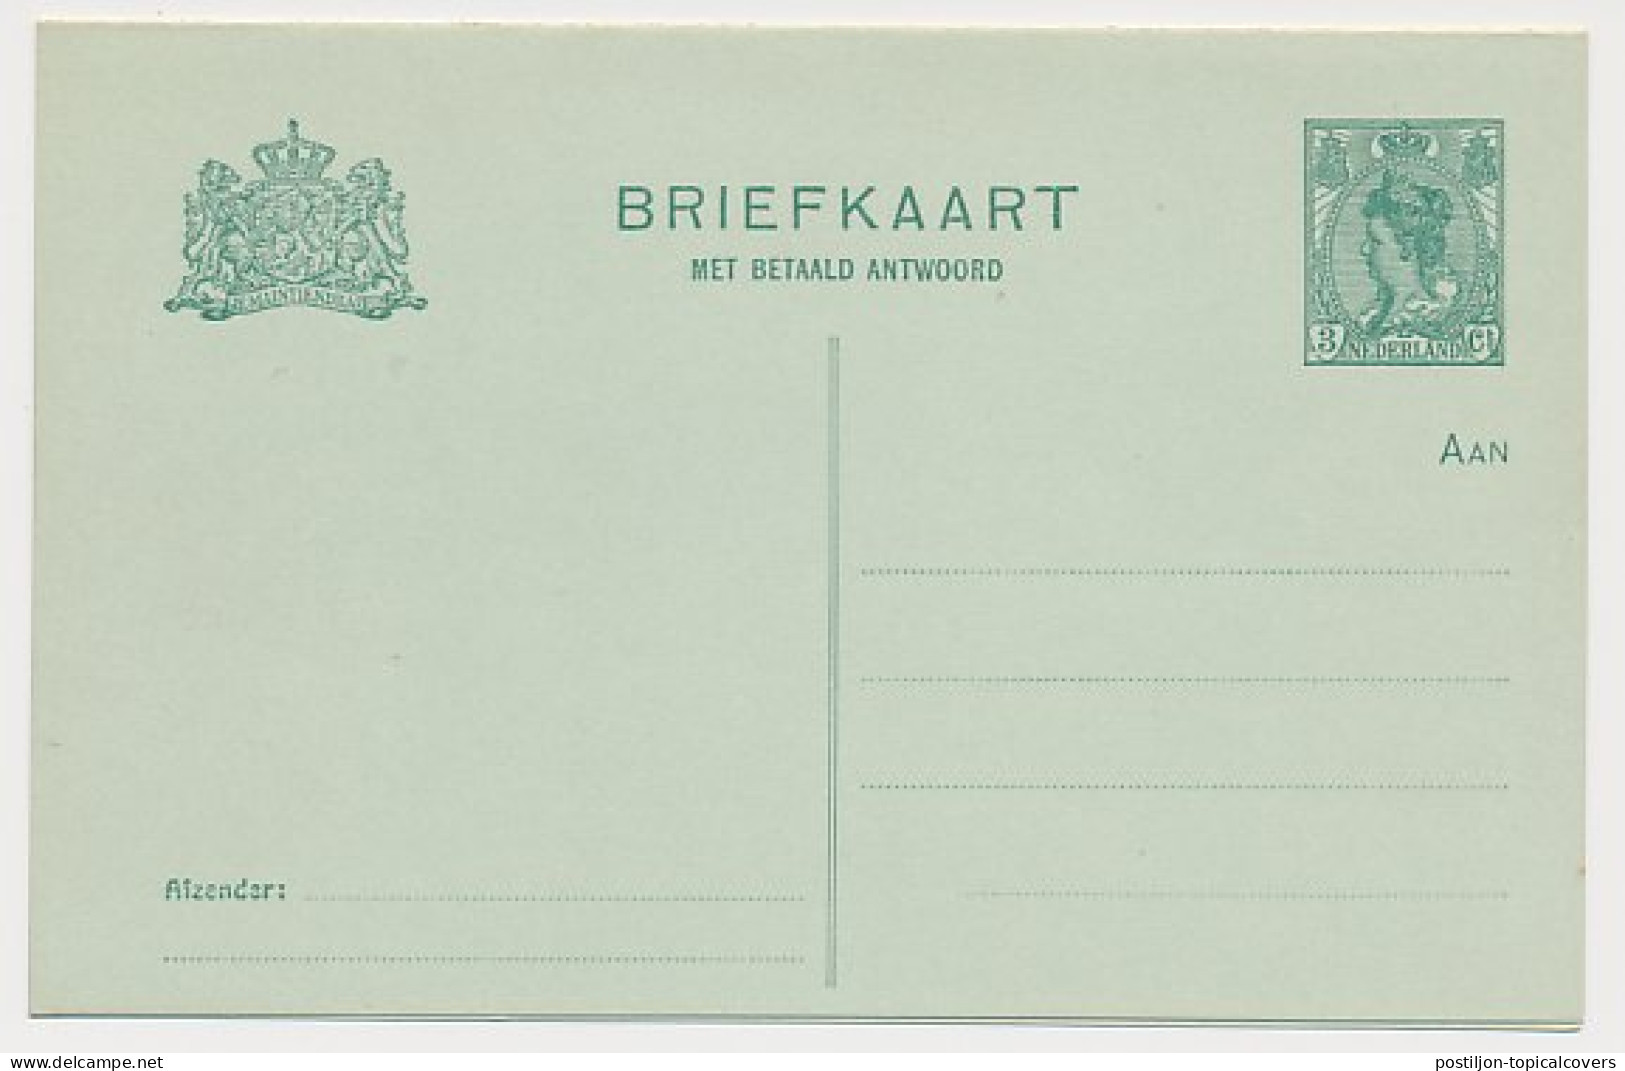 Briefkaart G. 91 I - Ganzsachen